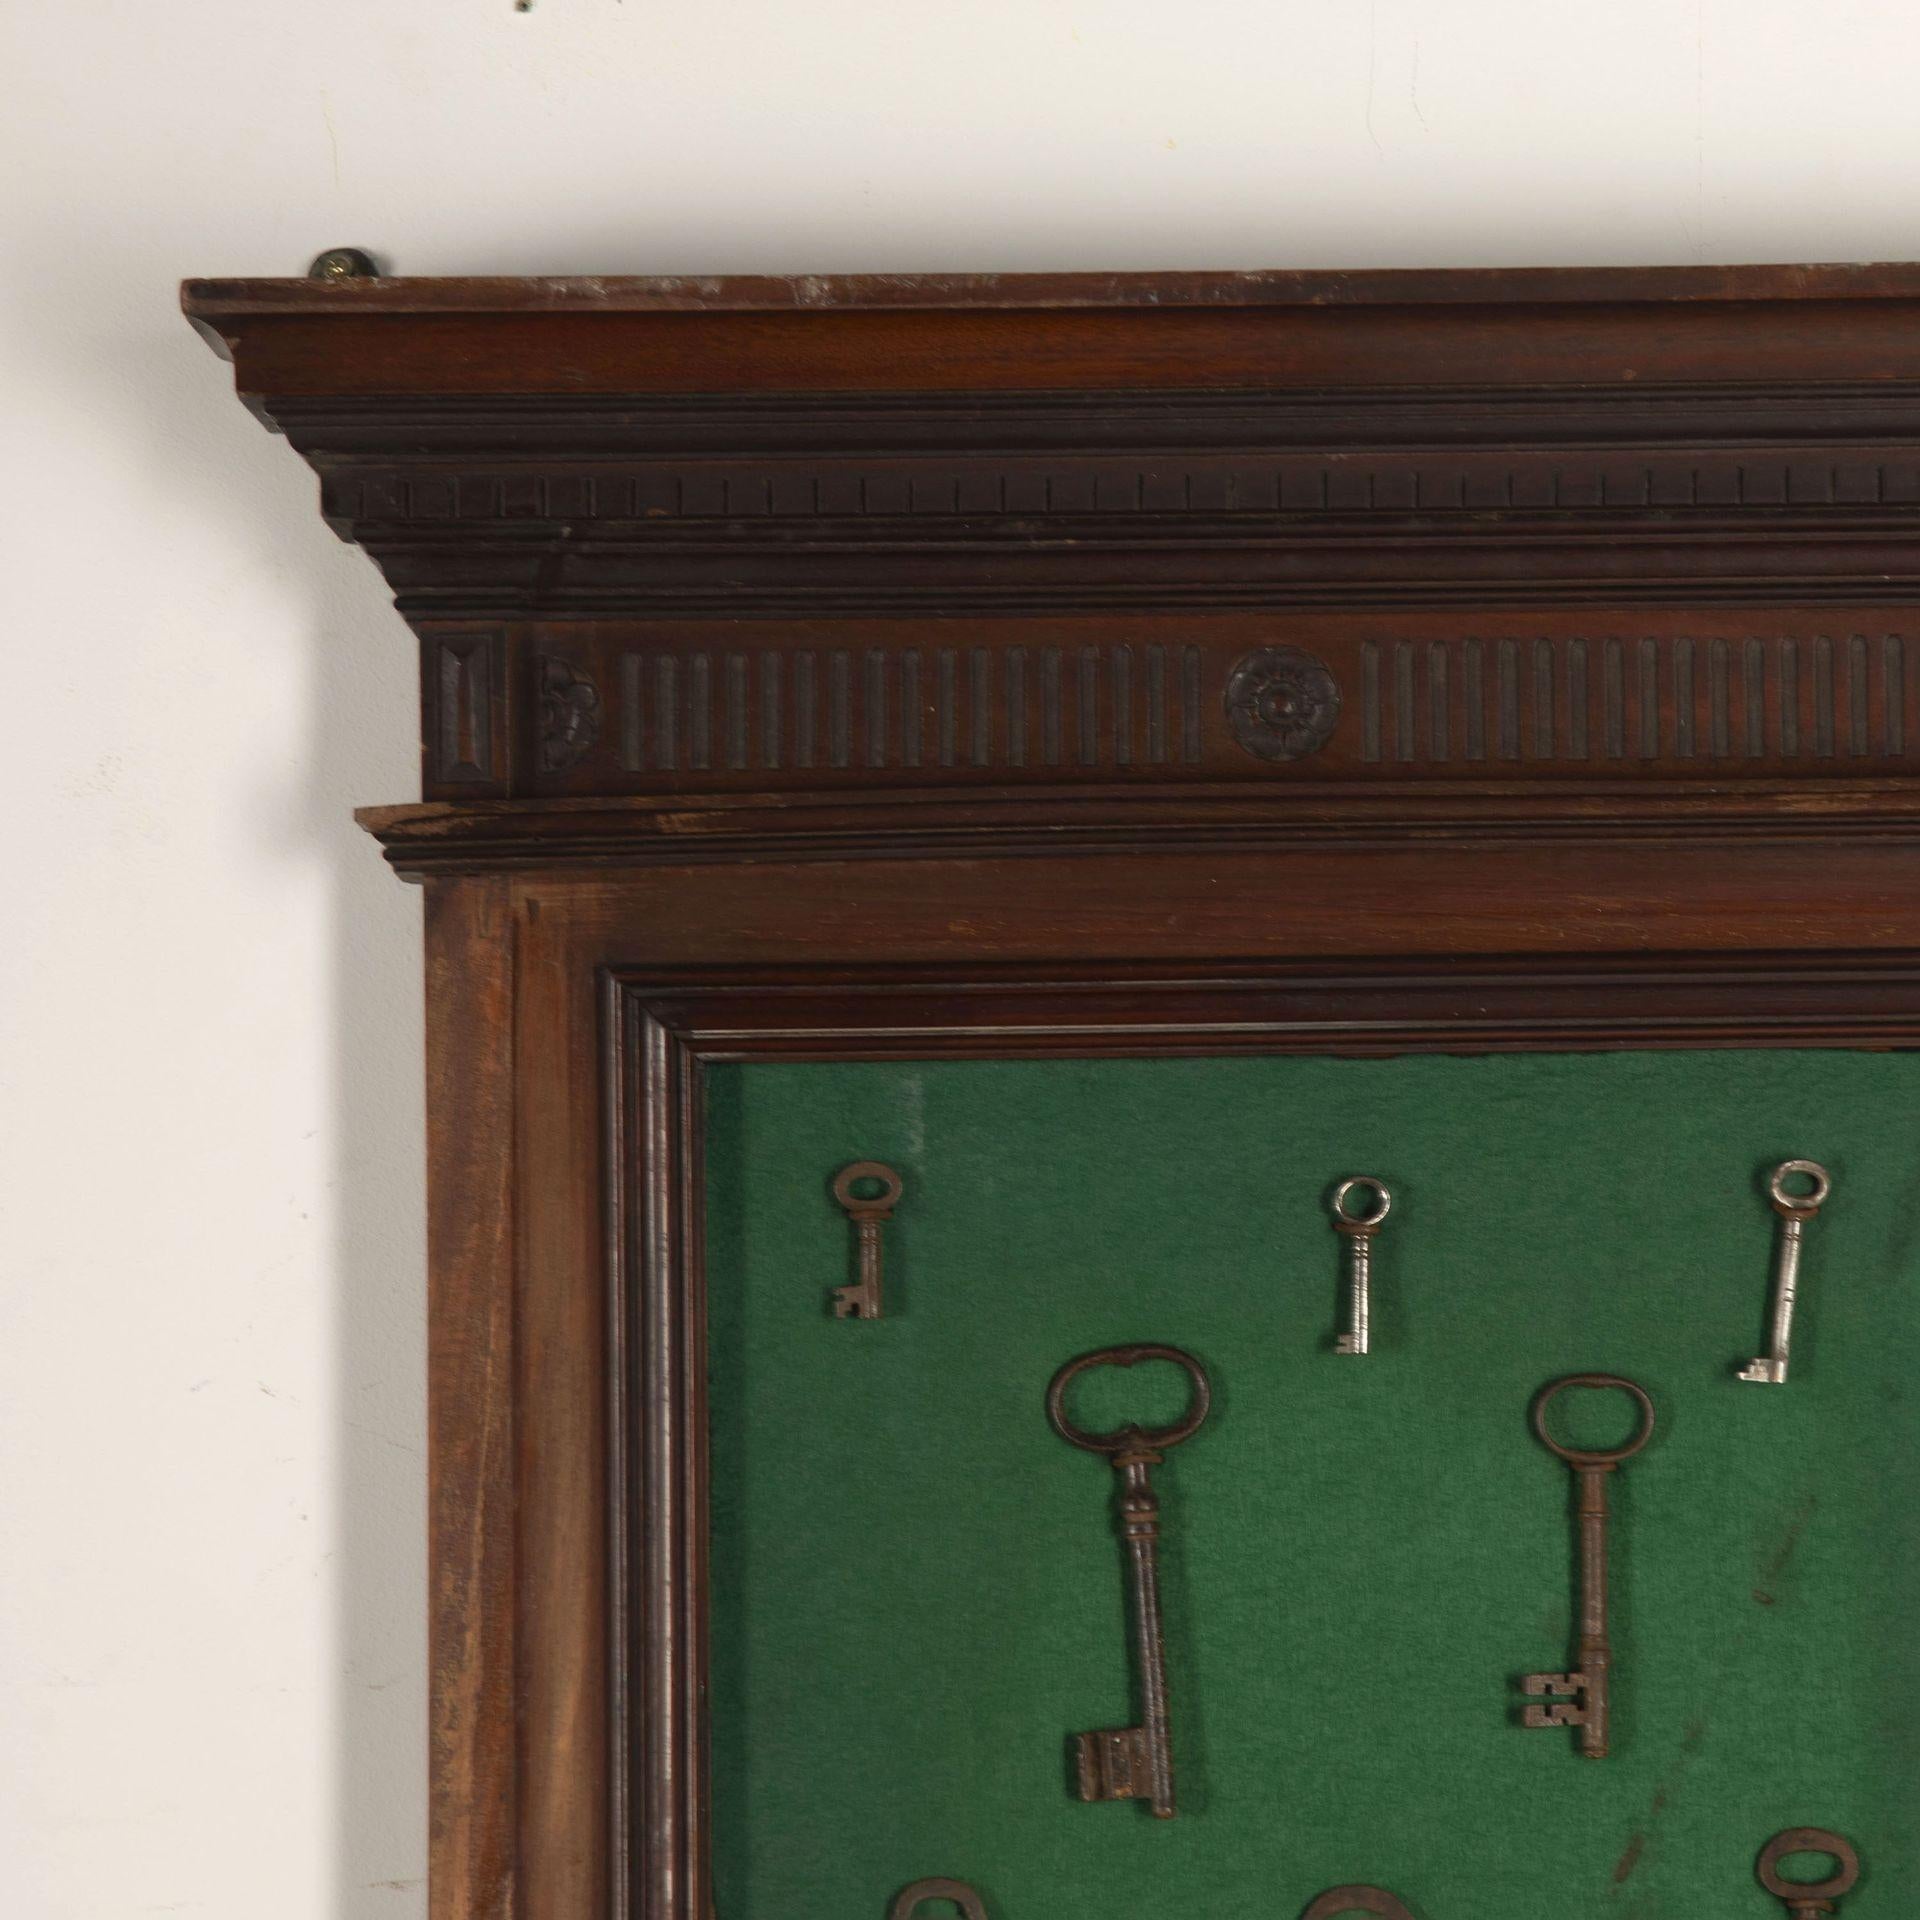 Sammlung von Metallschlüsseln aus dem 19. Jahrhundert, präsentiert in einem mit grünem Filz ausgekleideten Mahagonikoffer.